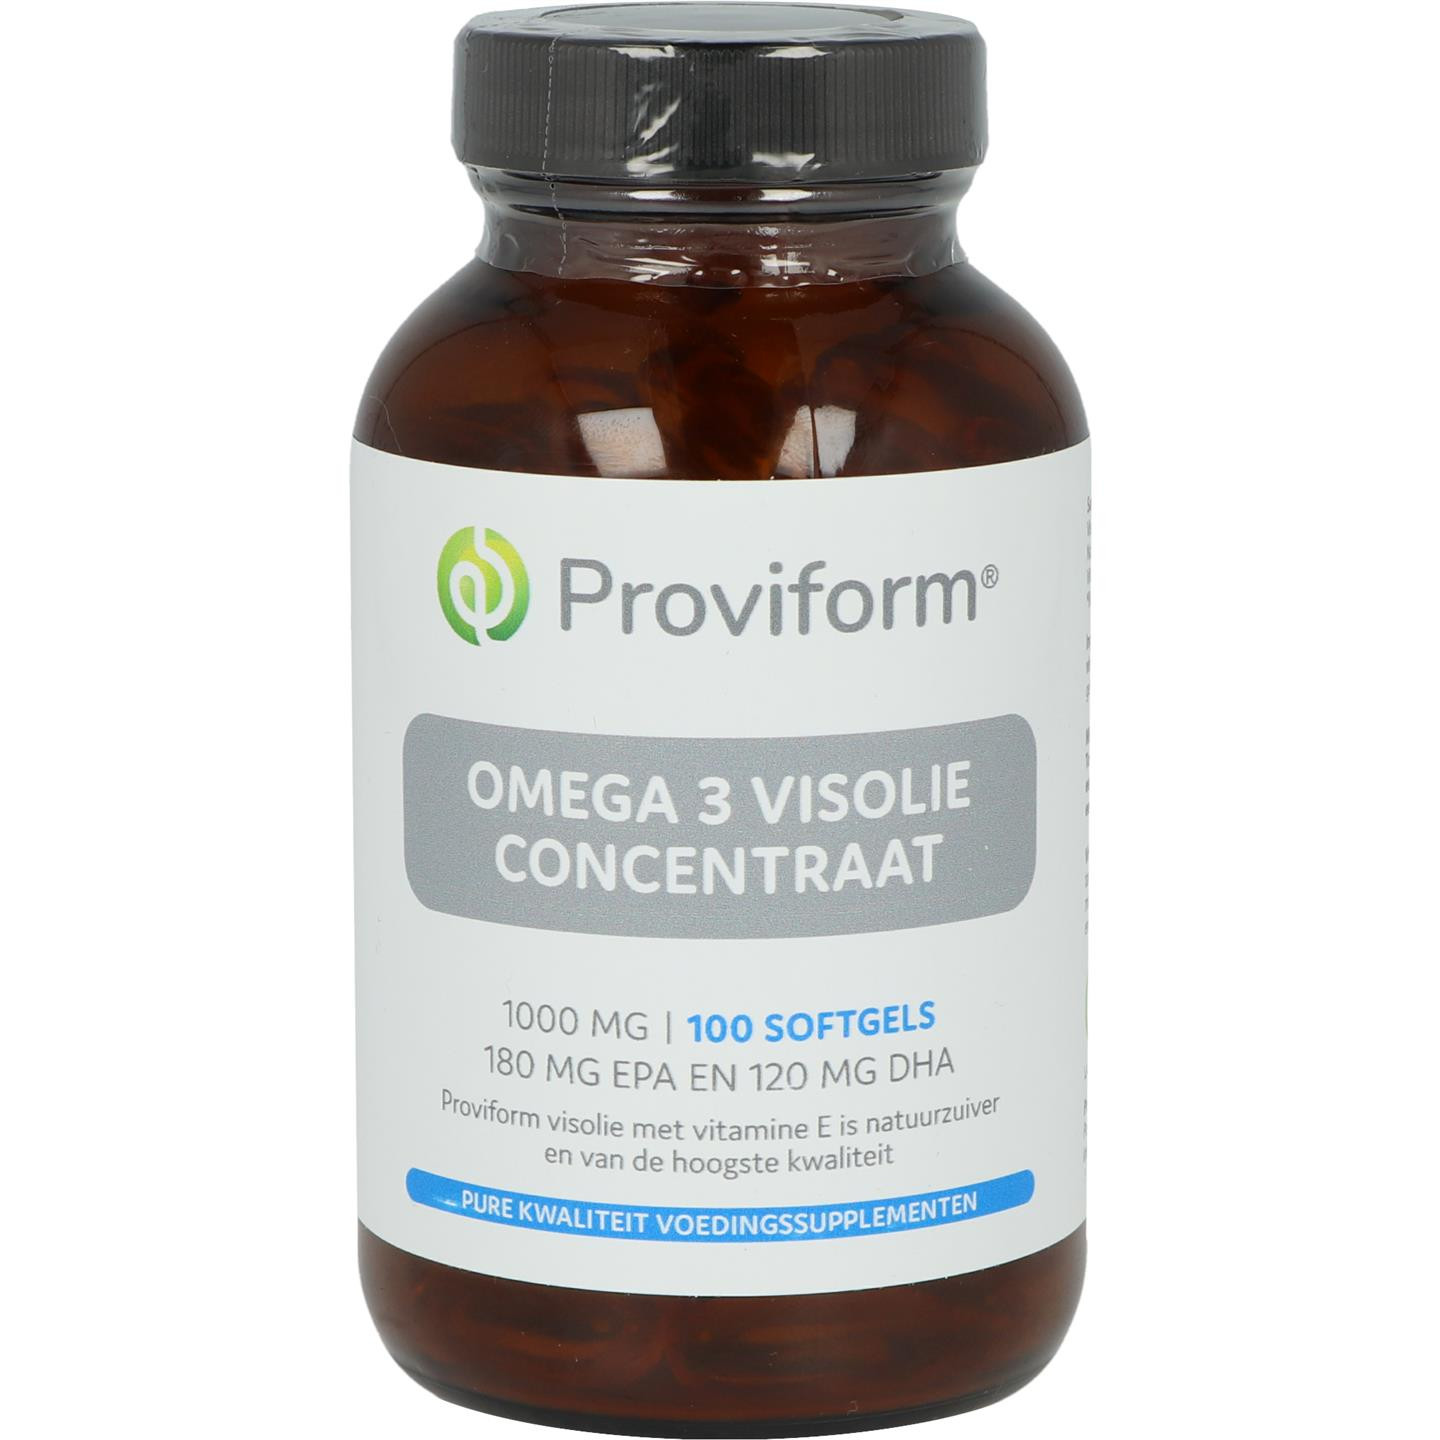 Omega 3 Visolie concentraat